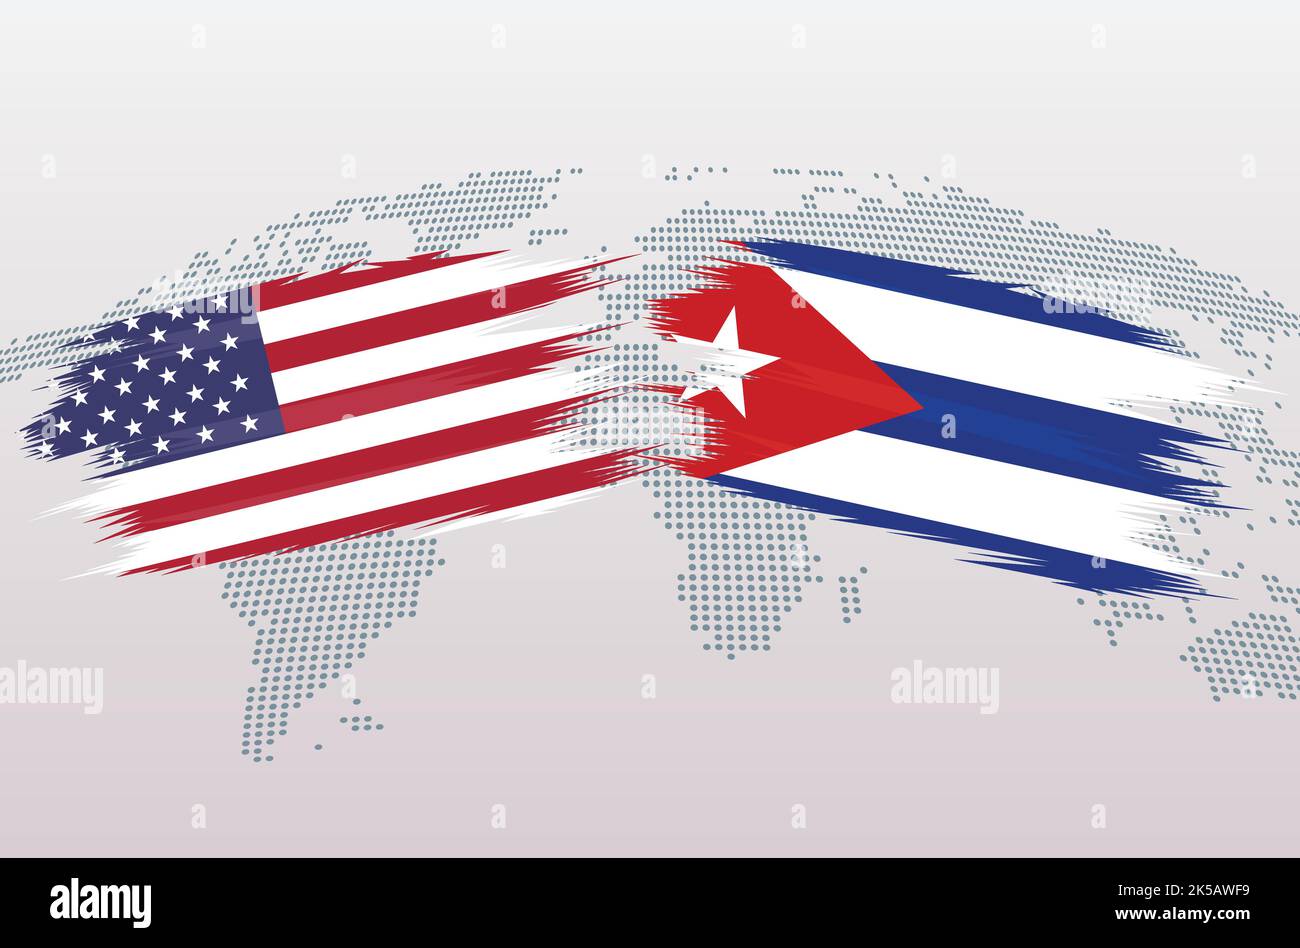 Banderas EE.UU. Vs CUBA. Las banderas de los Estados Unidos de América VS CUBA, aisladas sobre fondo gris del mapa mundial. Ilustración vectorial. Ilustración del Vector